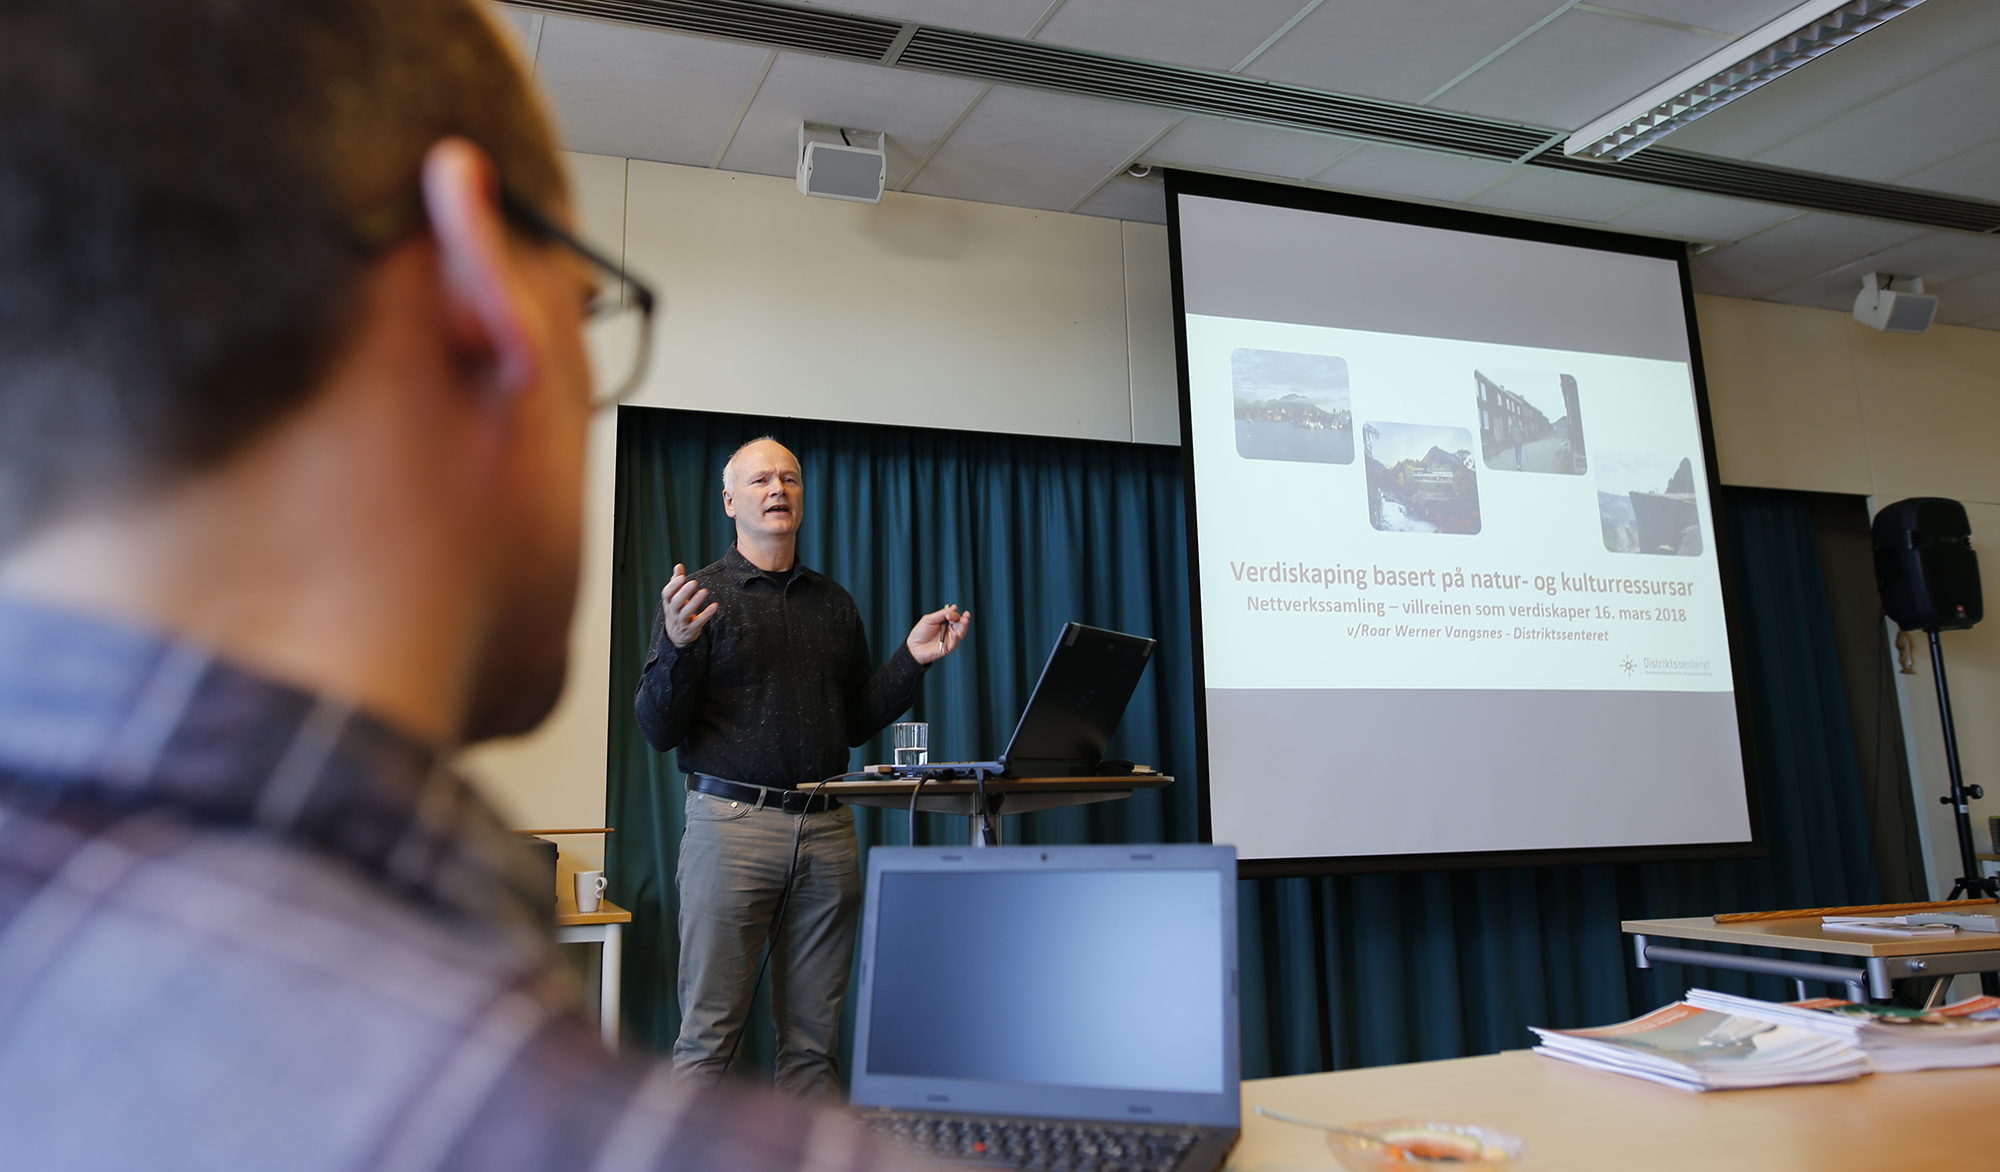 Roar W. Vangsnes fra Distriktsenteret i Sogndal hadde et inspirerende foredrag om verdiskaping basert på natur- og kulturressurser. Foto: Anders Mossing